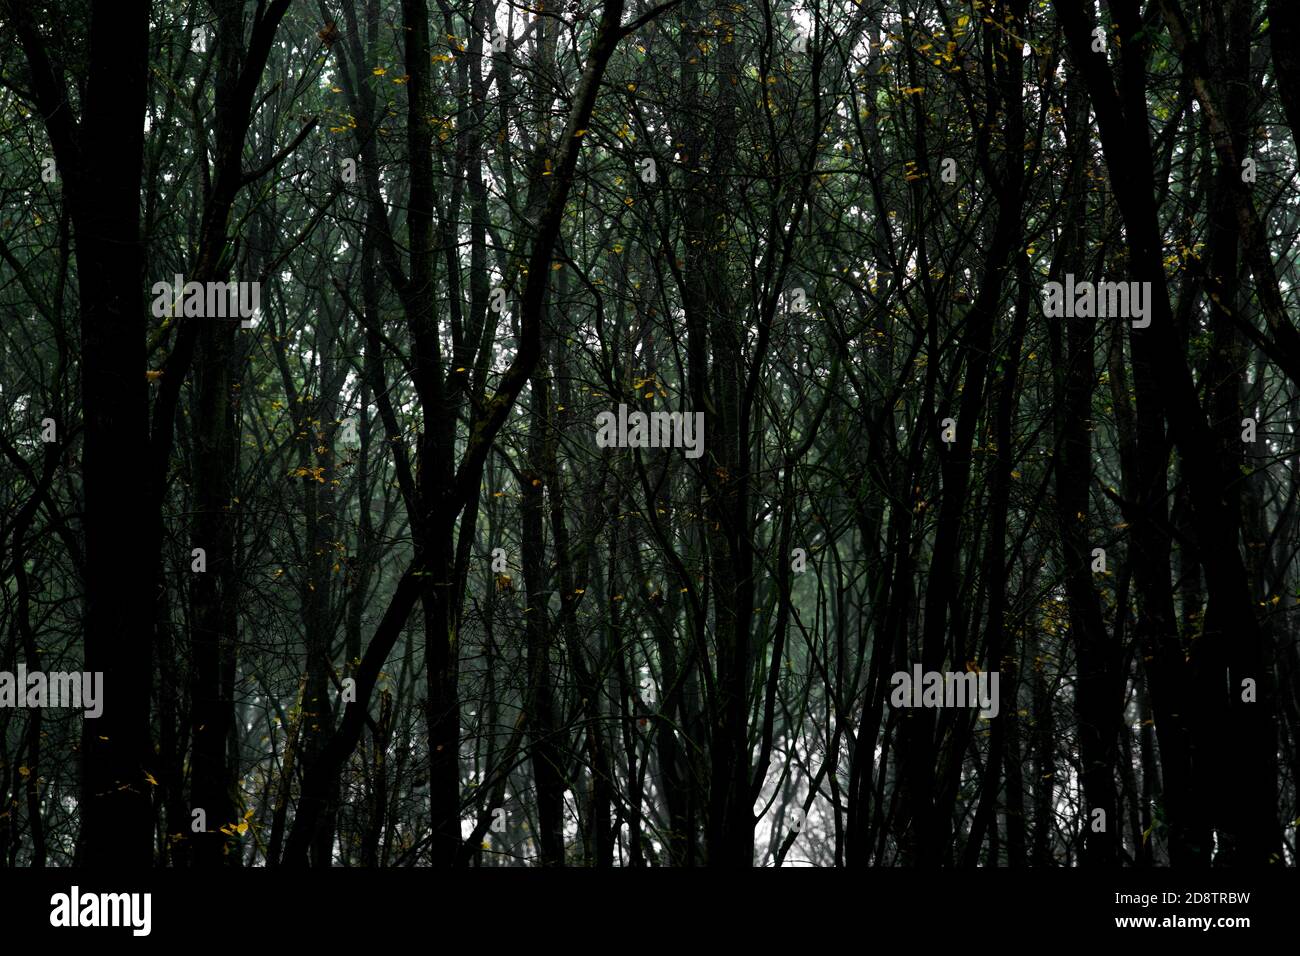 Gruseliger dunkler Wald mit hohen Bäumen und Reben. Horizontale Komposition, Vollformat Stockfoto